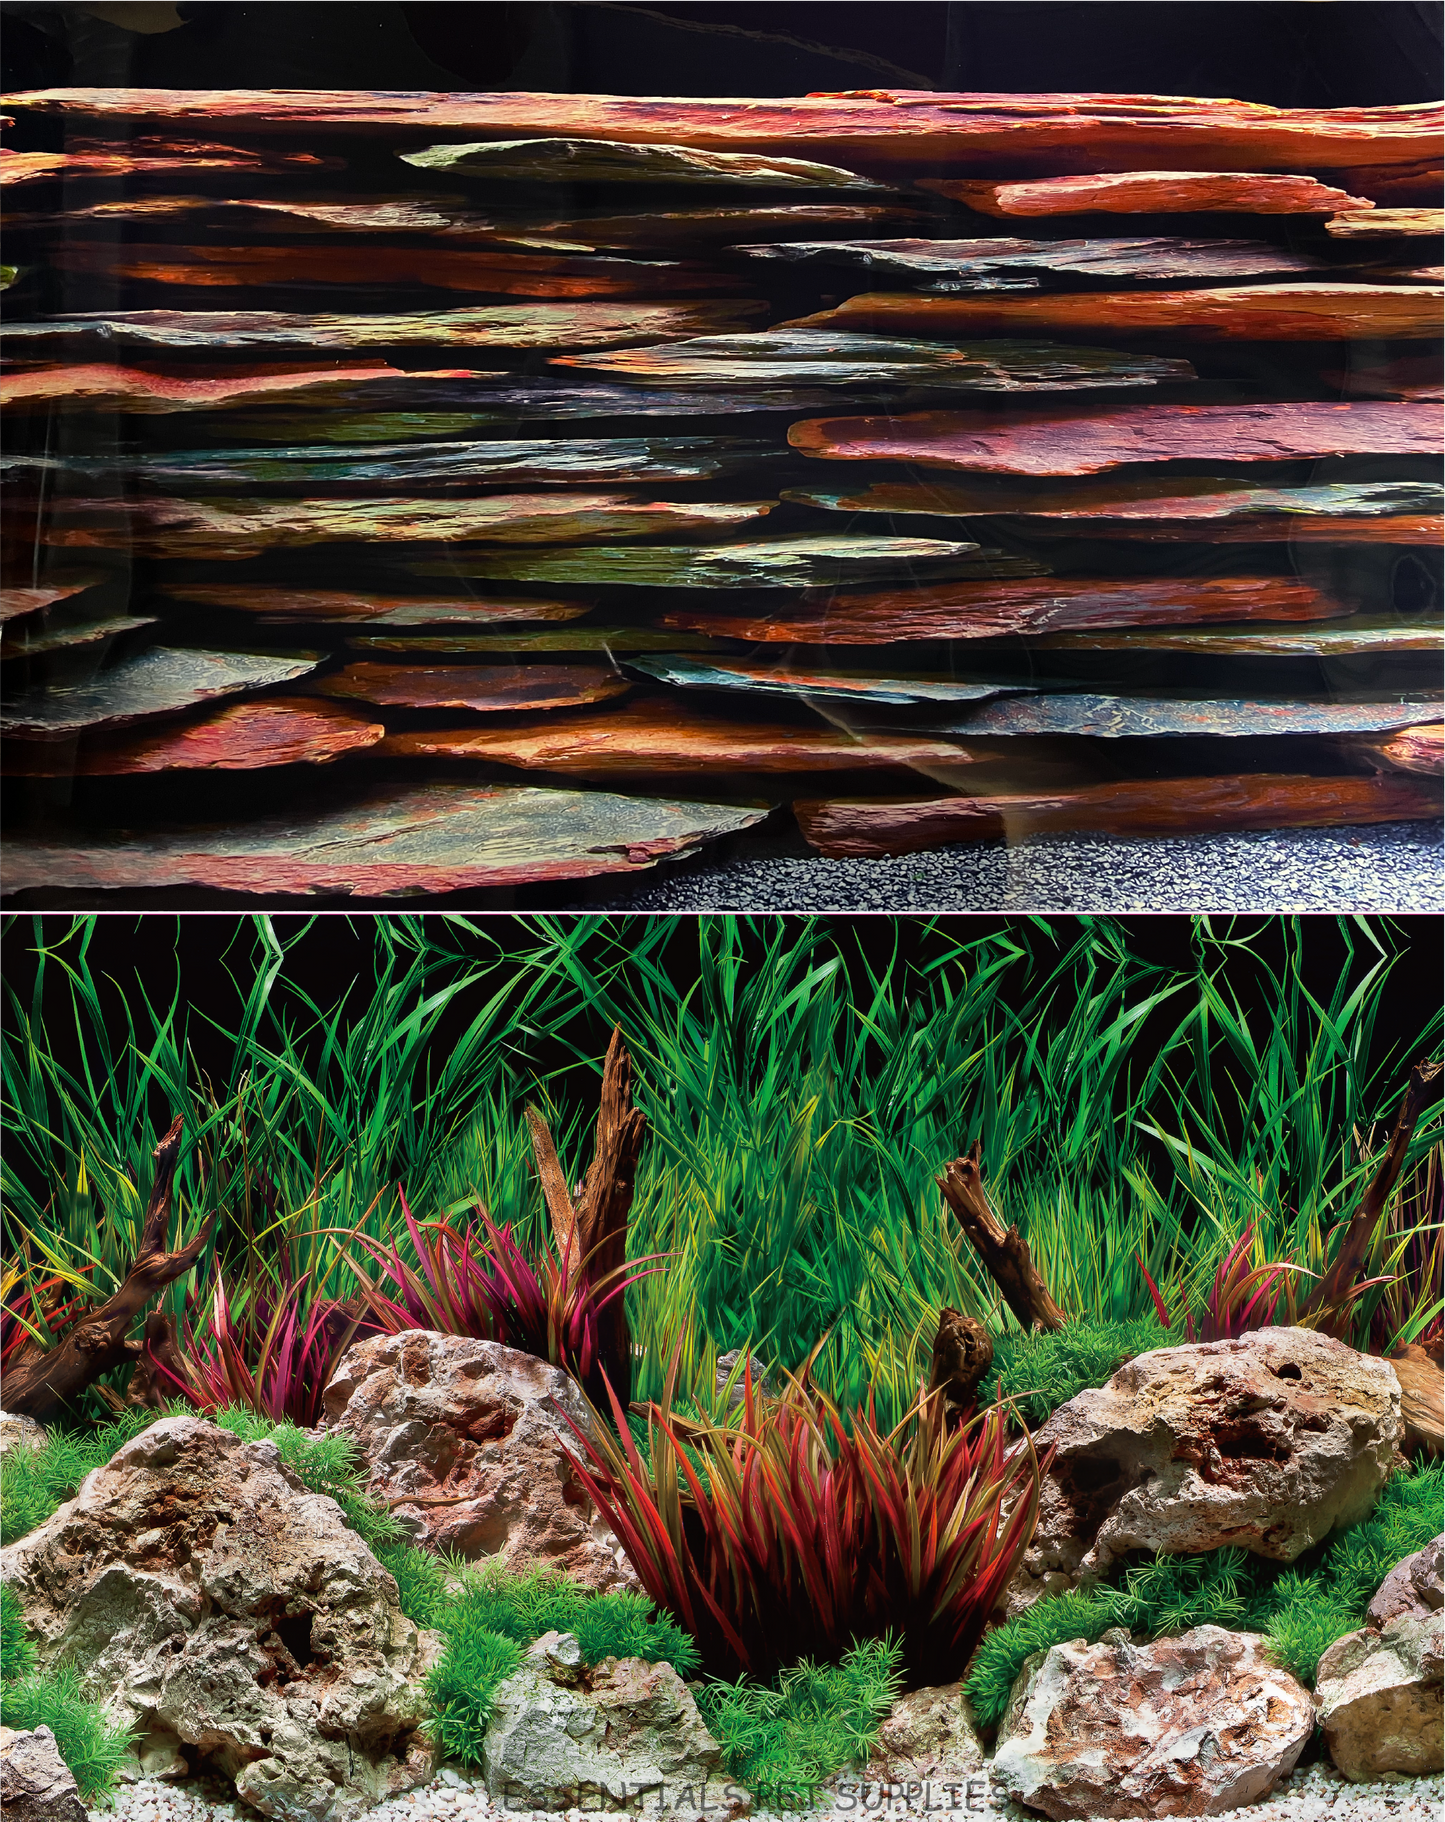 Aquarium Fish Tank Background Double Side Poster 40"(100cm)*3ft(92cm)